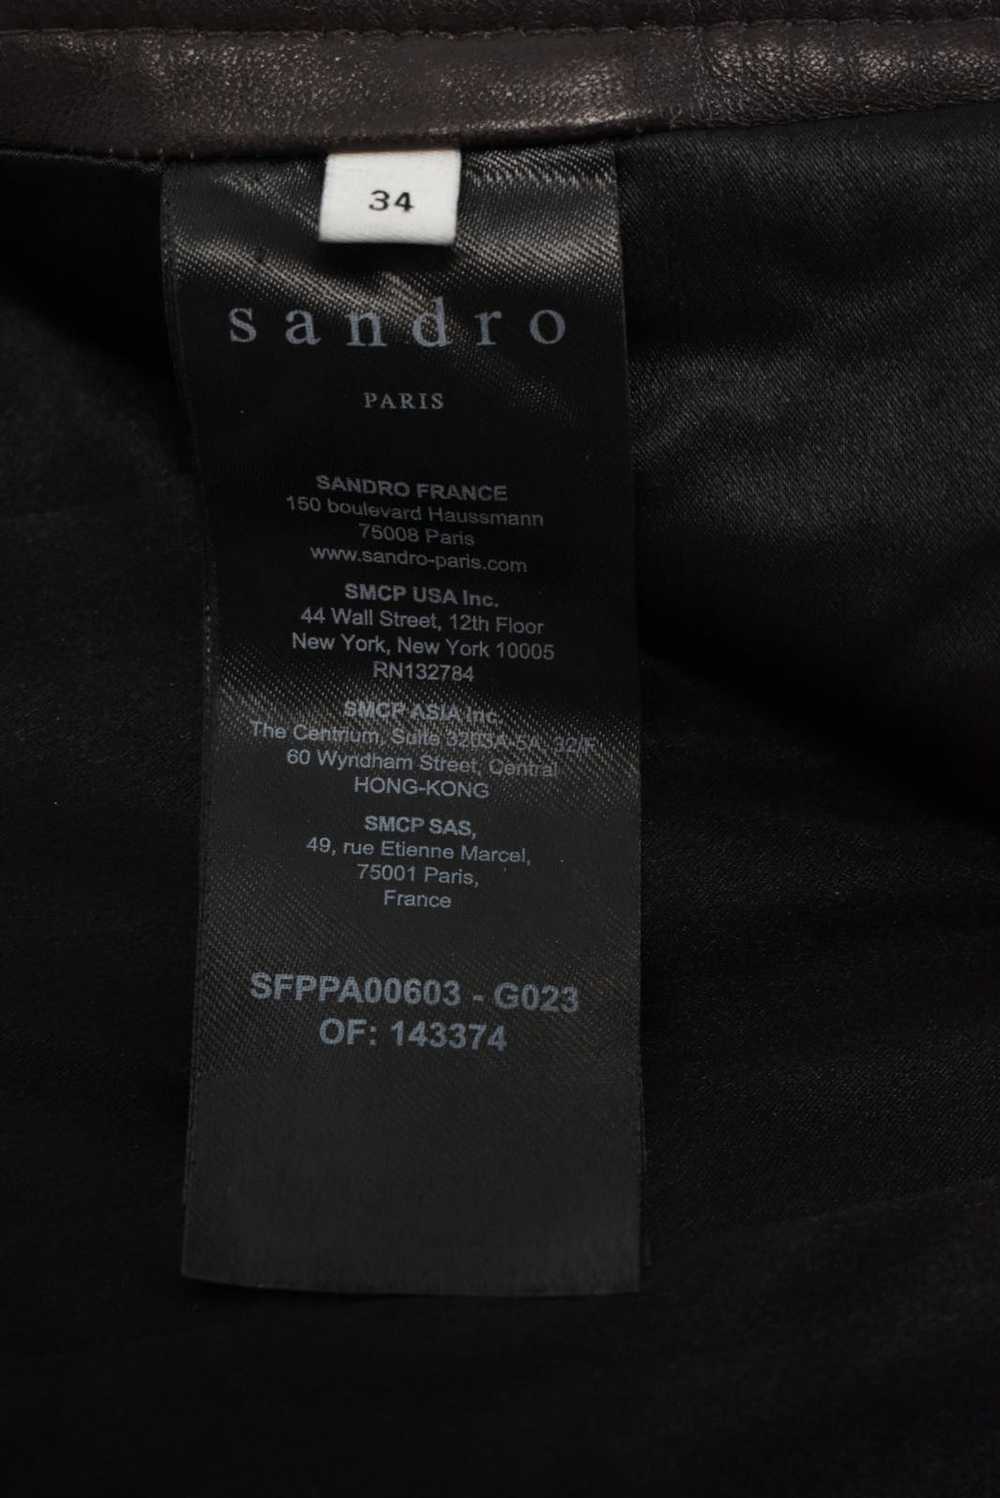 Sandro SANDRO Trousers Women's (EU) 34 Lamb Leath… - image 5